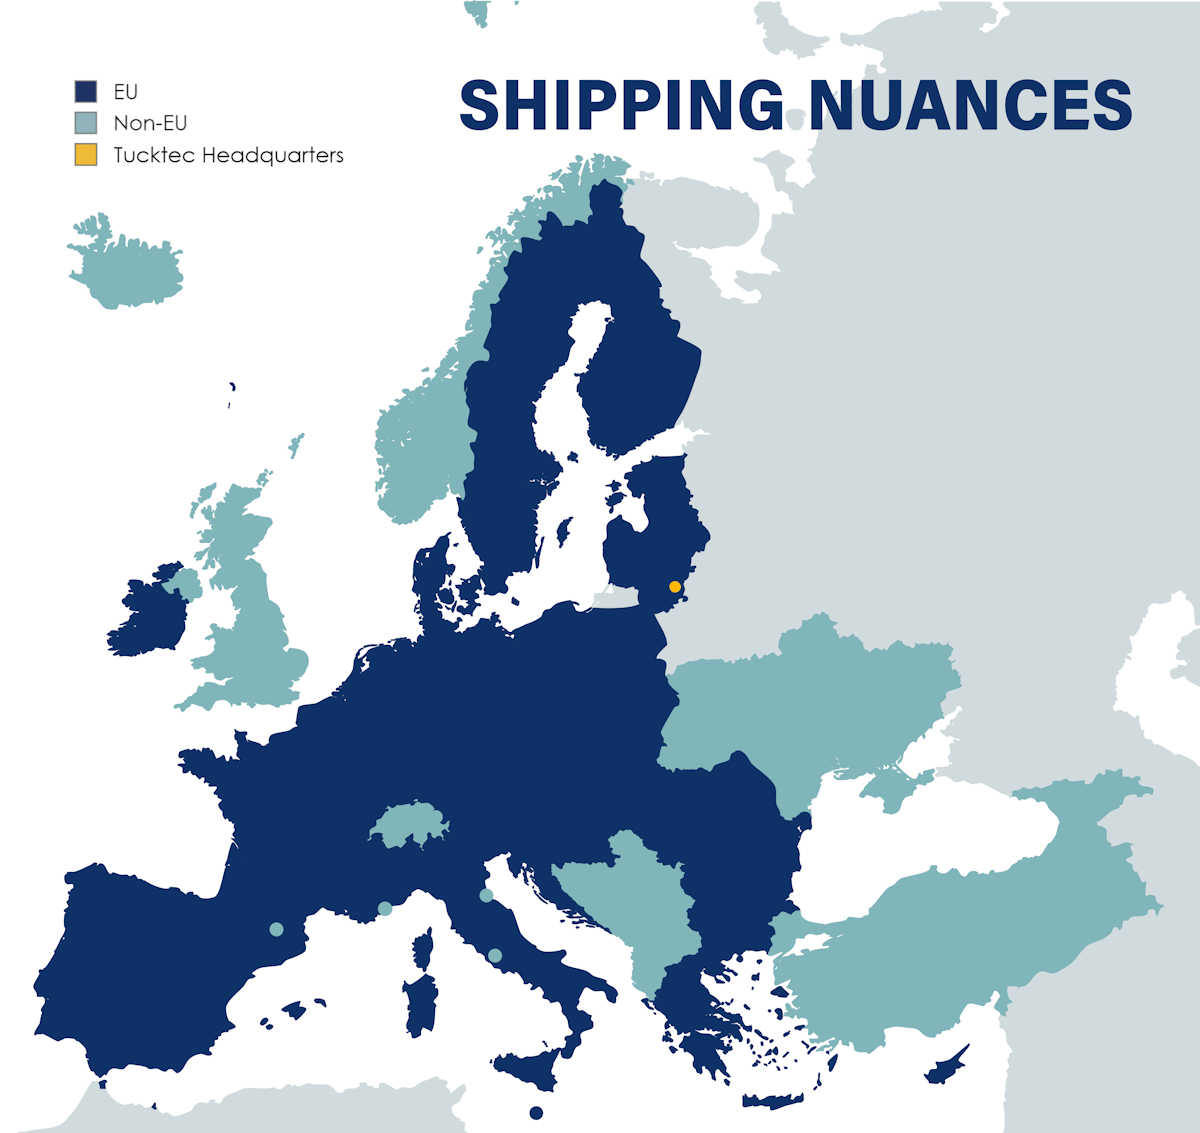 Shipping nuances - EU and non-EU countries